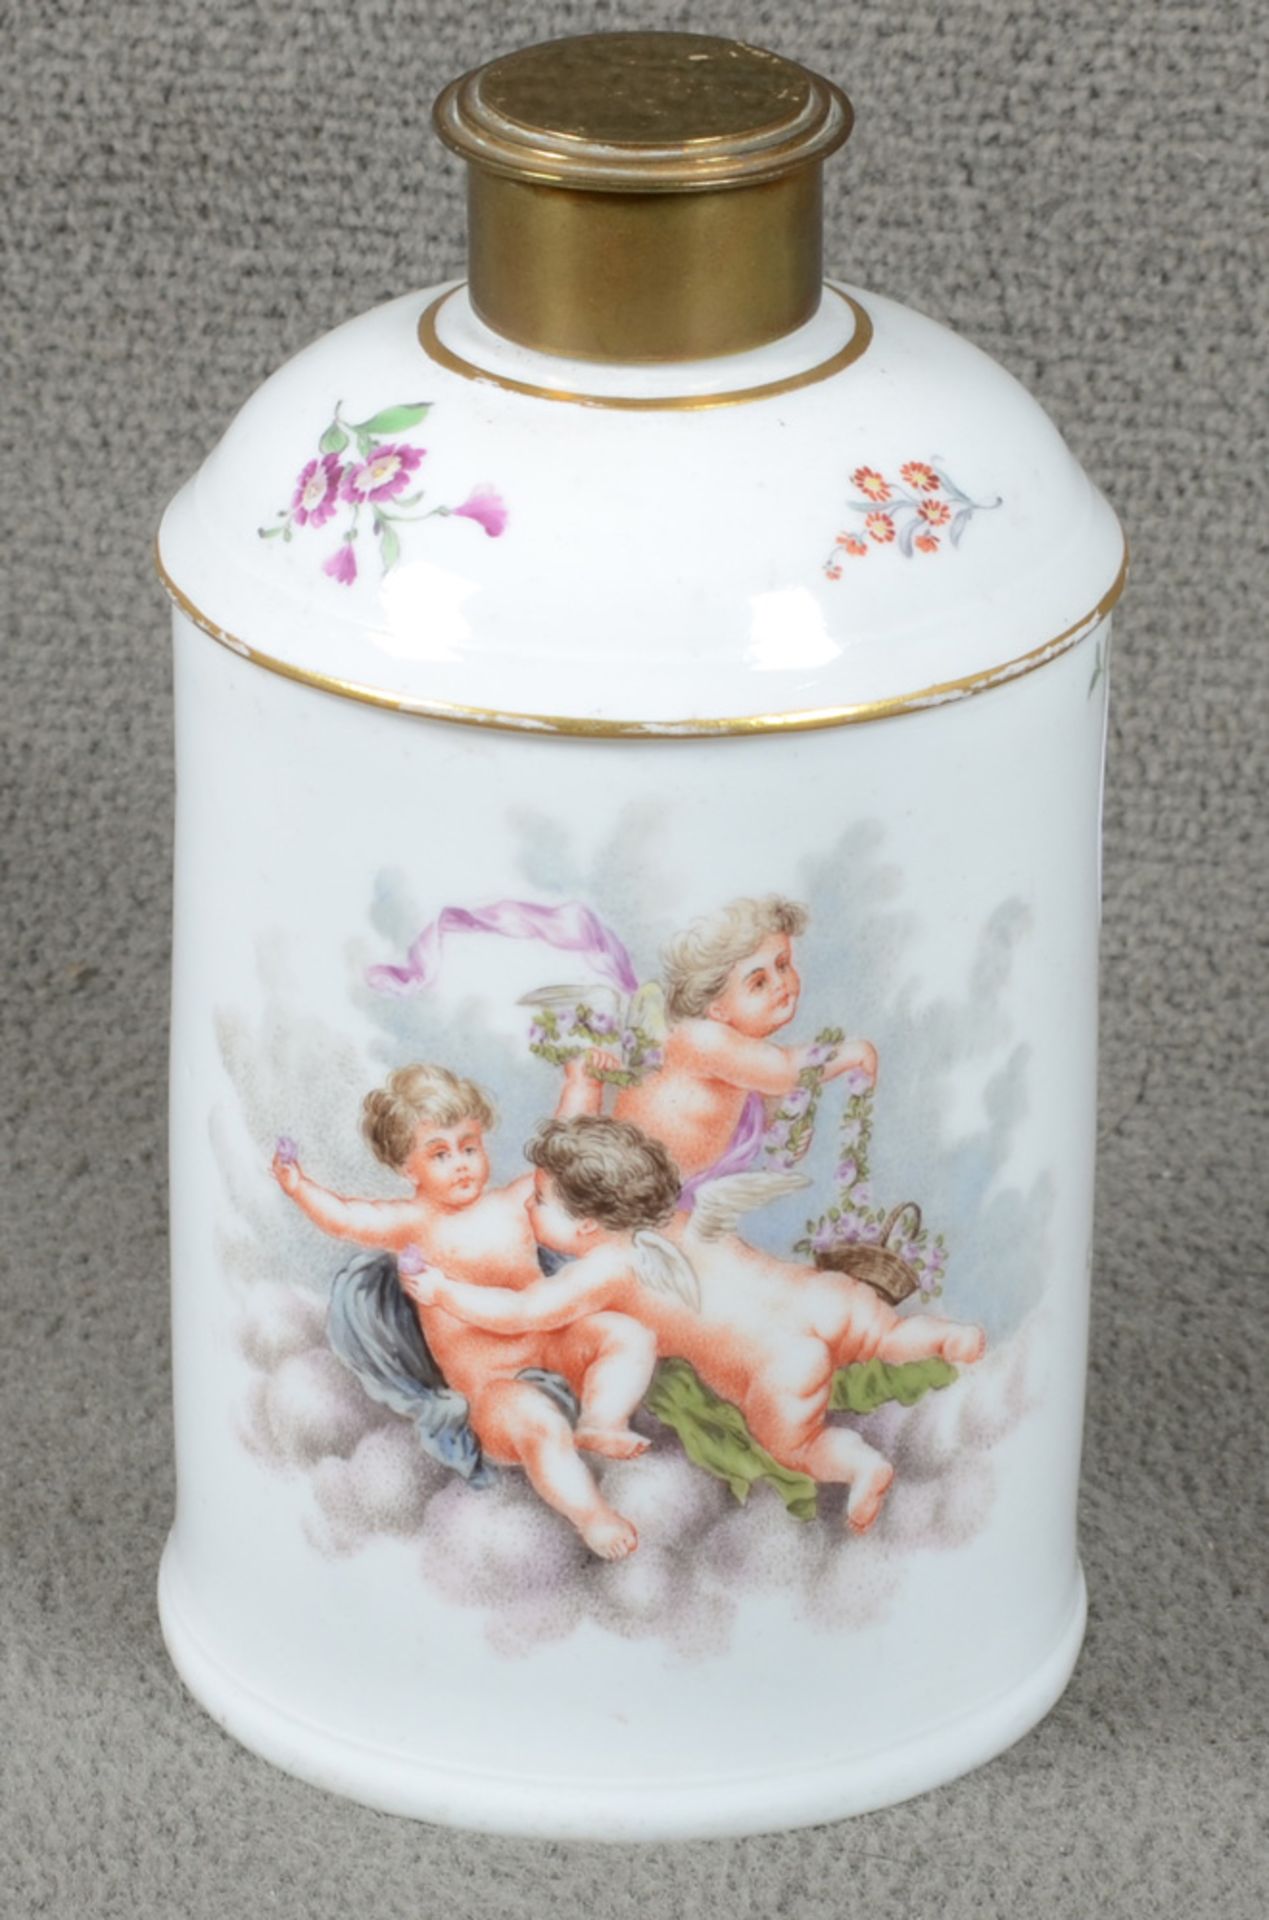 Teedose. Höchst um 1770. Porzellan, bunt bemalt mit fliegenden Putten und Floraldekor. Am Boden